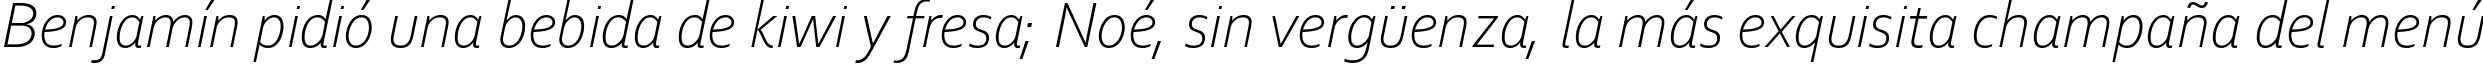 Пример написания шрифтом Corbel Light Italic текста на испанском